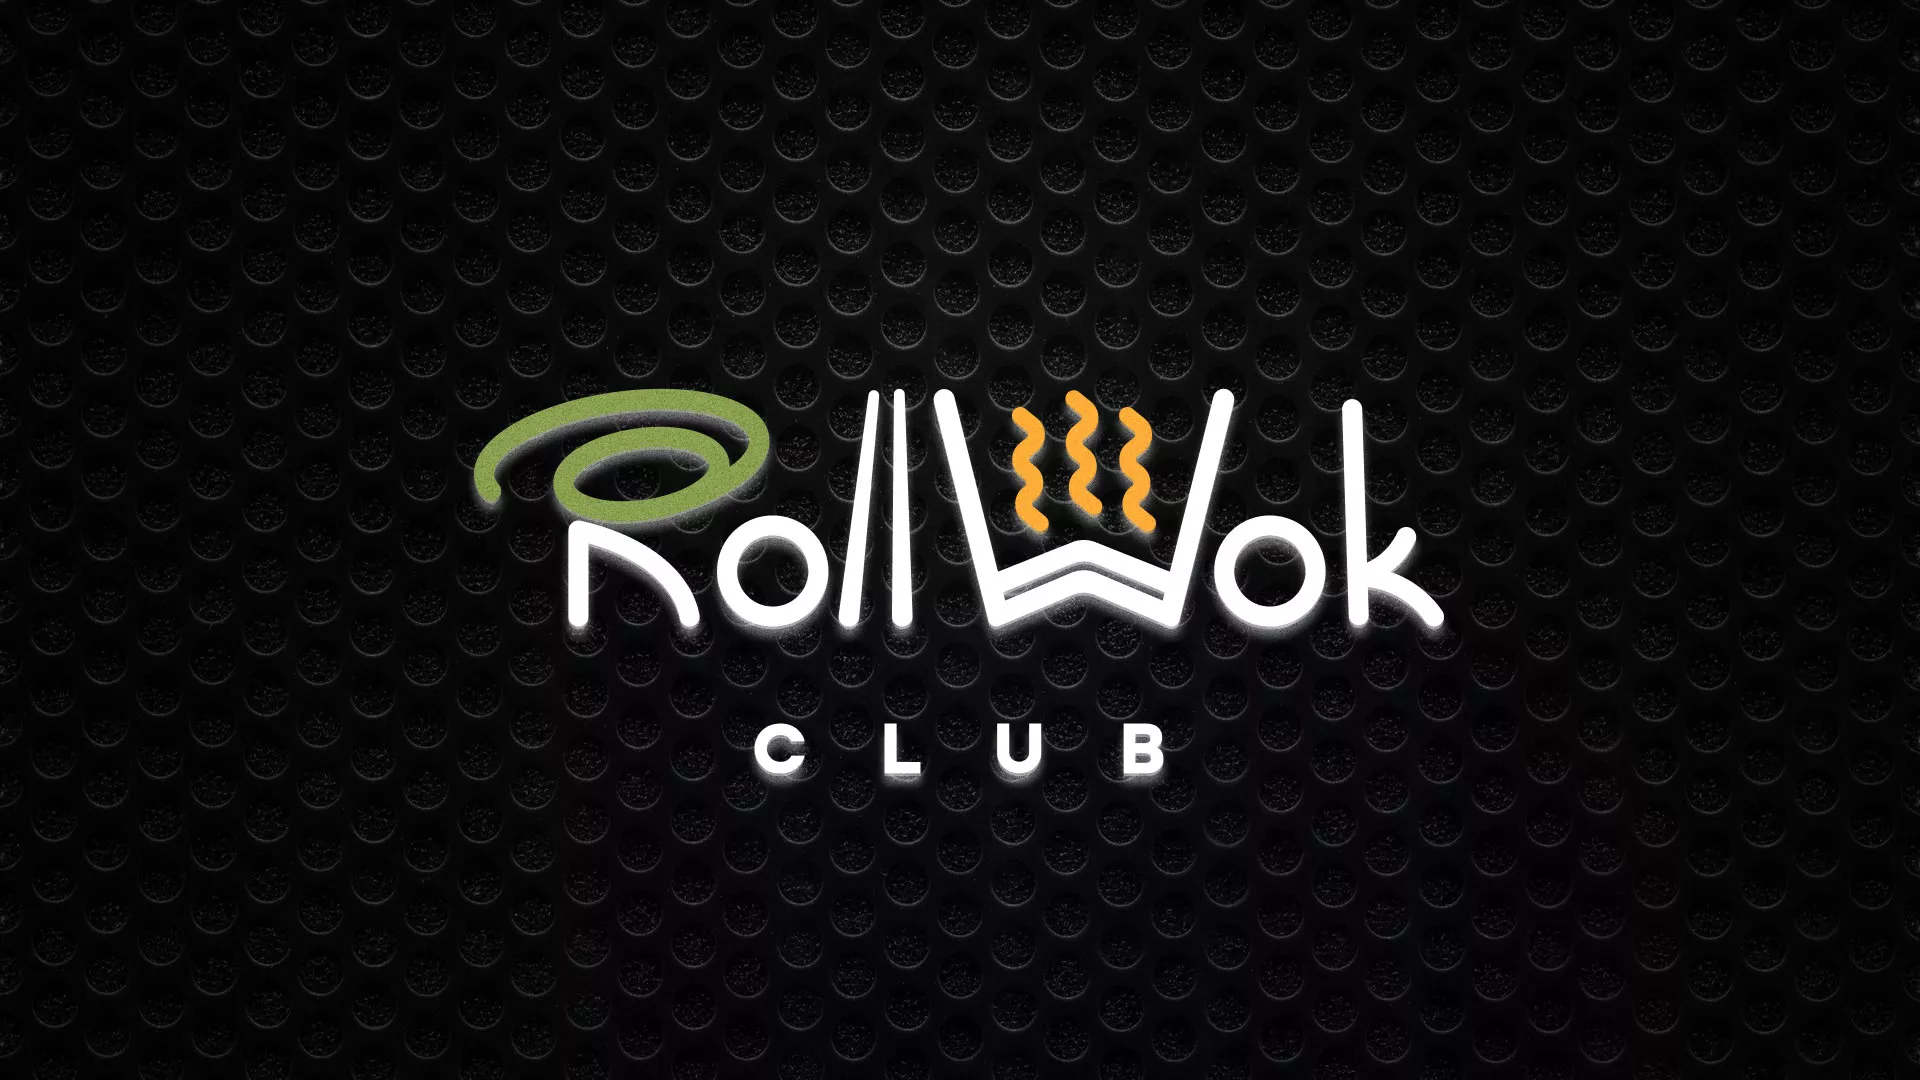 Брендирование торговых точек суши-бара «Roll Wok Club» в Борзе